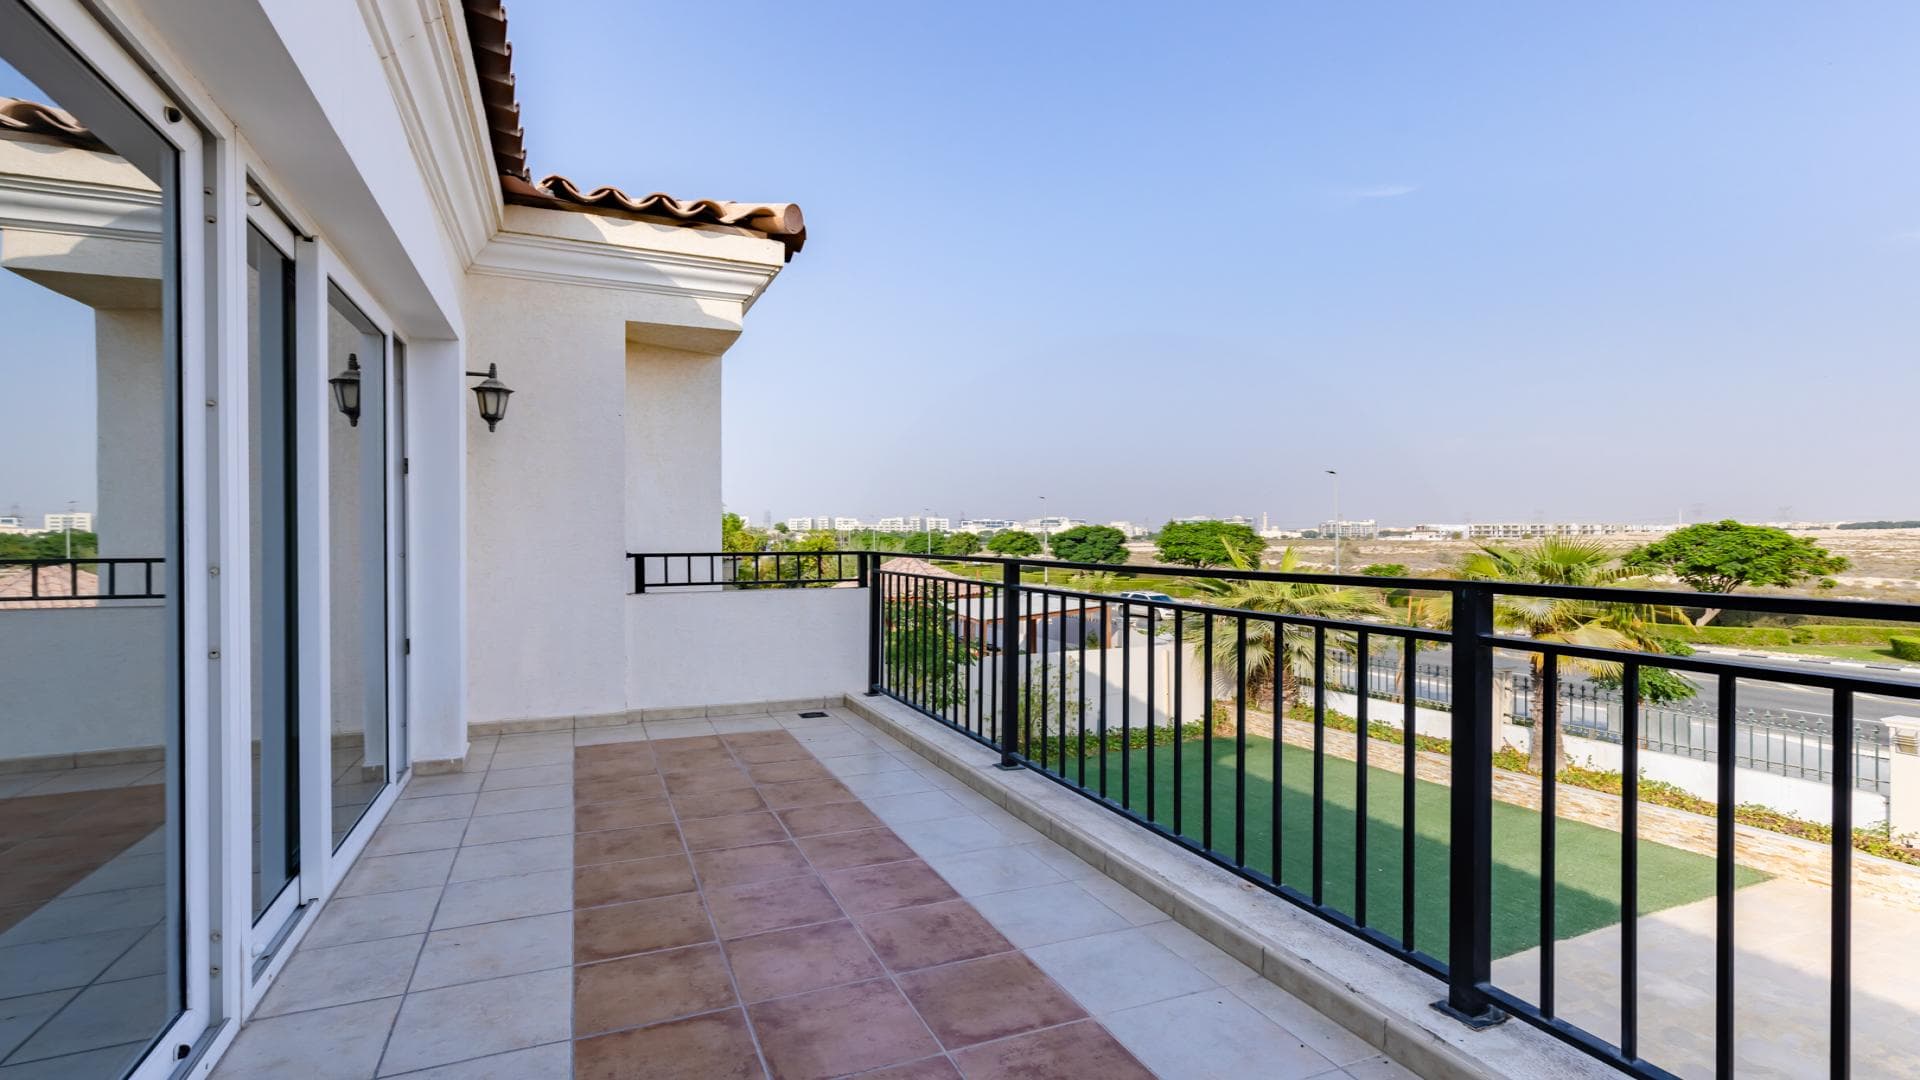 5 Bedroom Villa For Rent Al Thamam 36 Lp39013 1d3572e0b7c56900.jpg